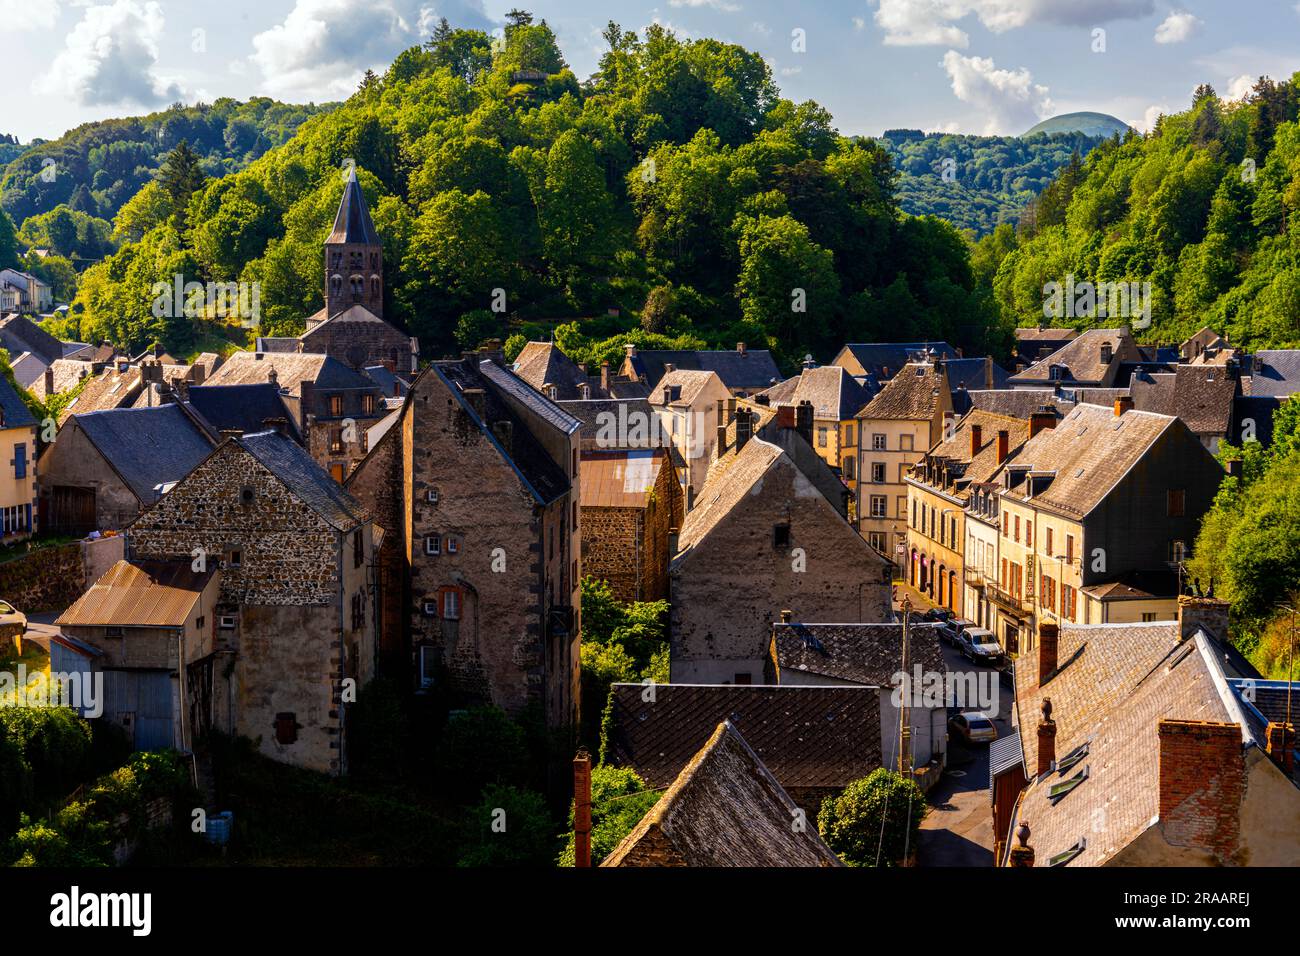 Vista sopraelevata della cittadina di Rochefort-Montagne, Francia. Rochefort-Montagne è un comune della Francia centrale facente parte del dipartimento di Puy-de-Dôme. Foto Stock